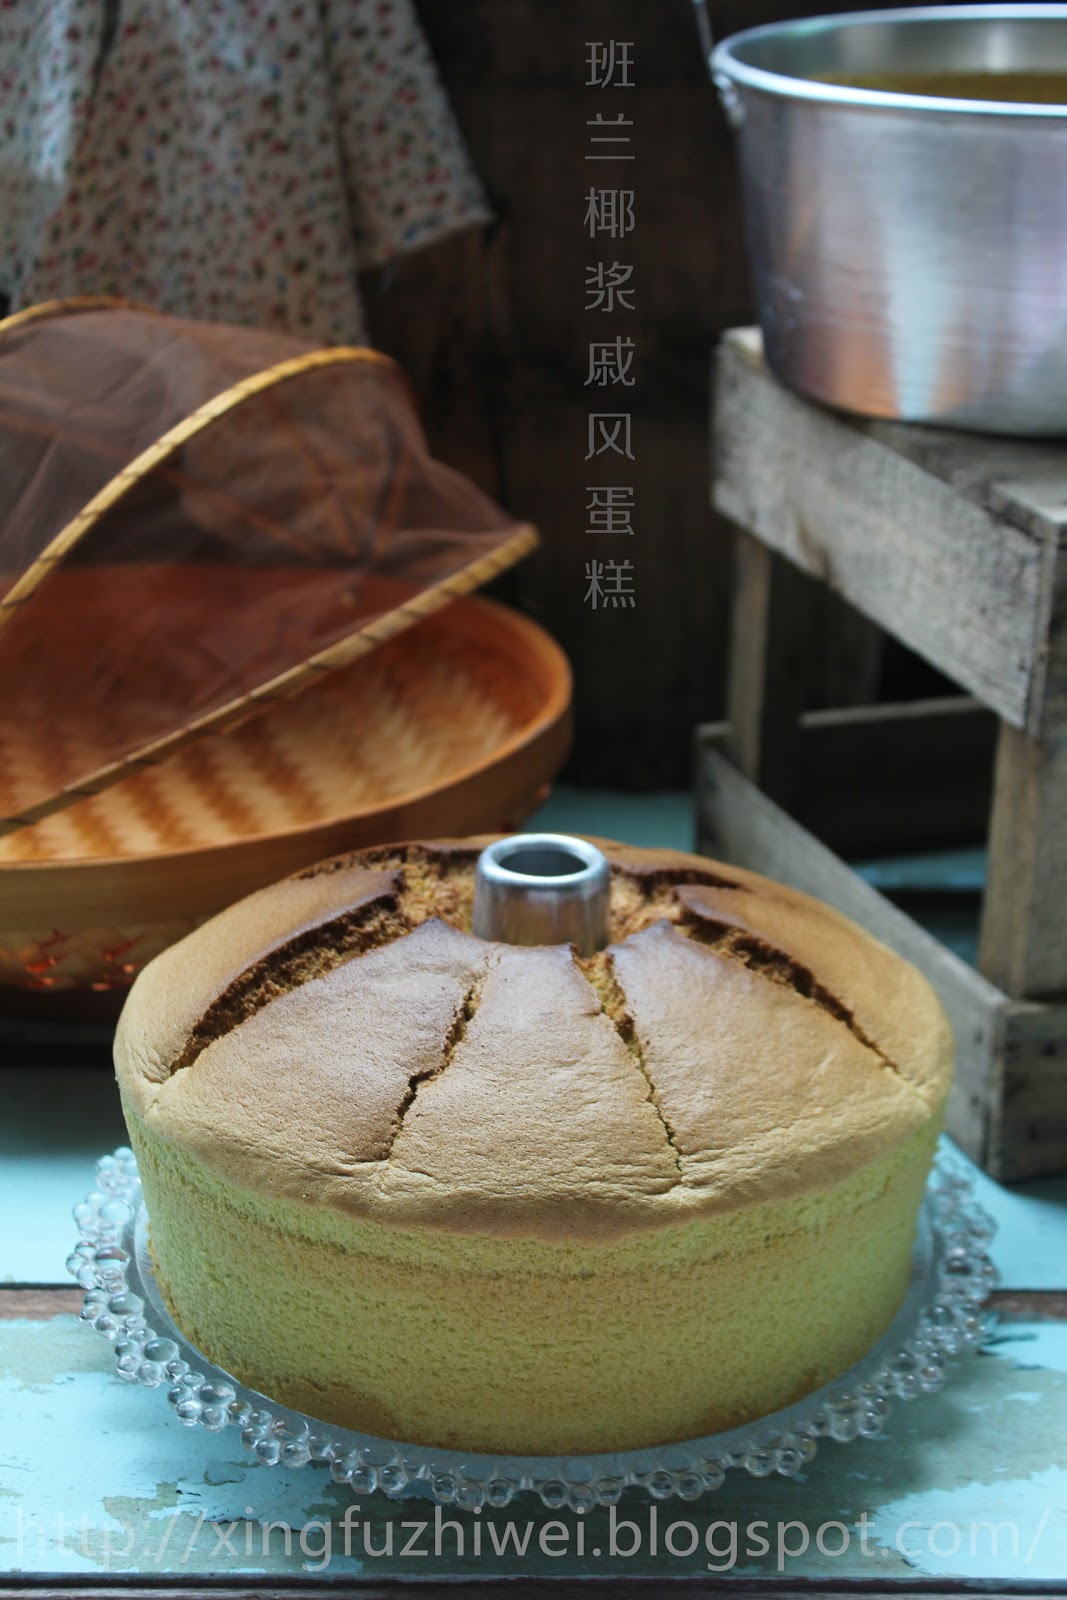 爱厨房的幸福之味: 班兰椰浆戚风蛋糕 Pandan Coconut Chiffon Cake